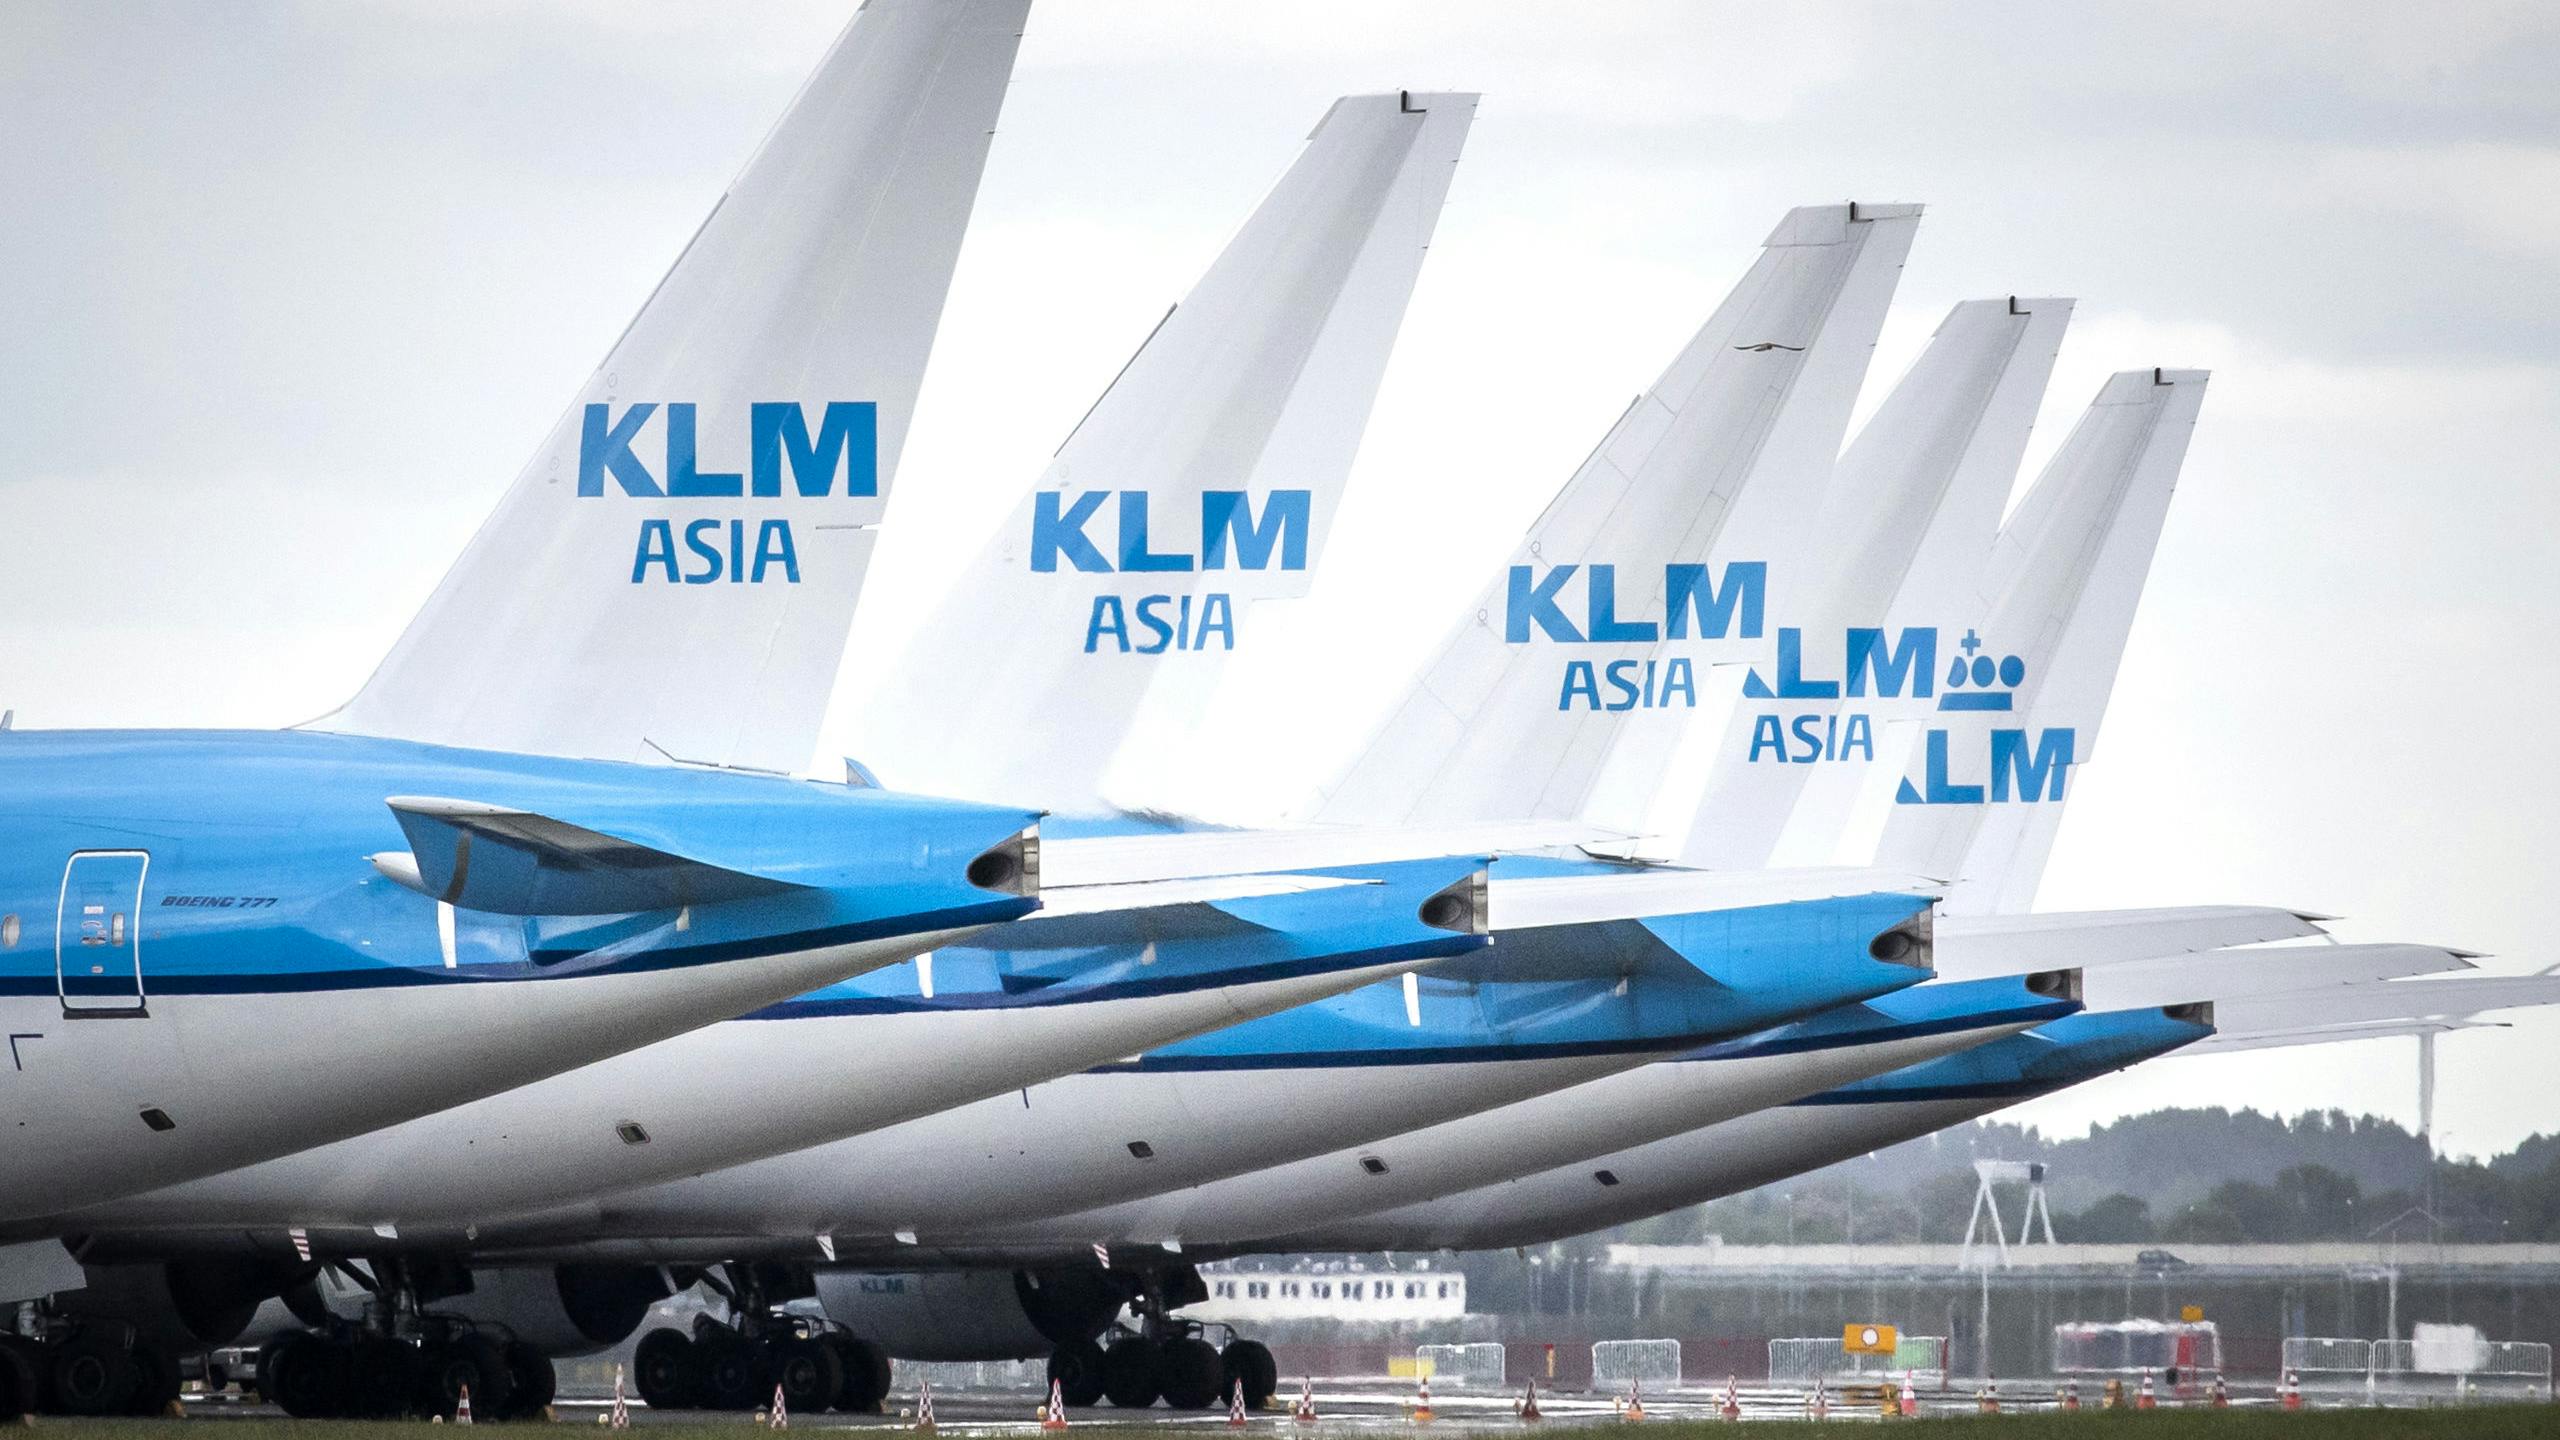 Vliegtuigen bij luchthaven Schiphol